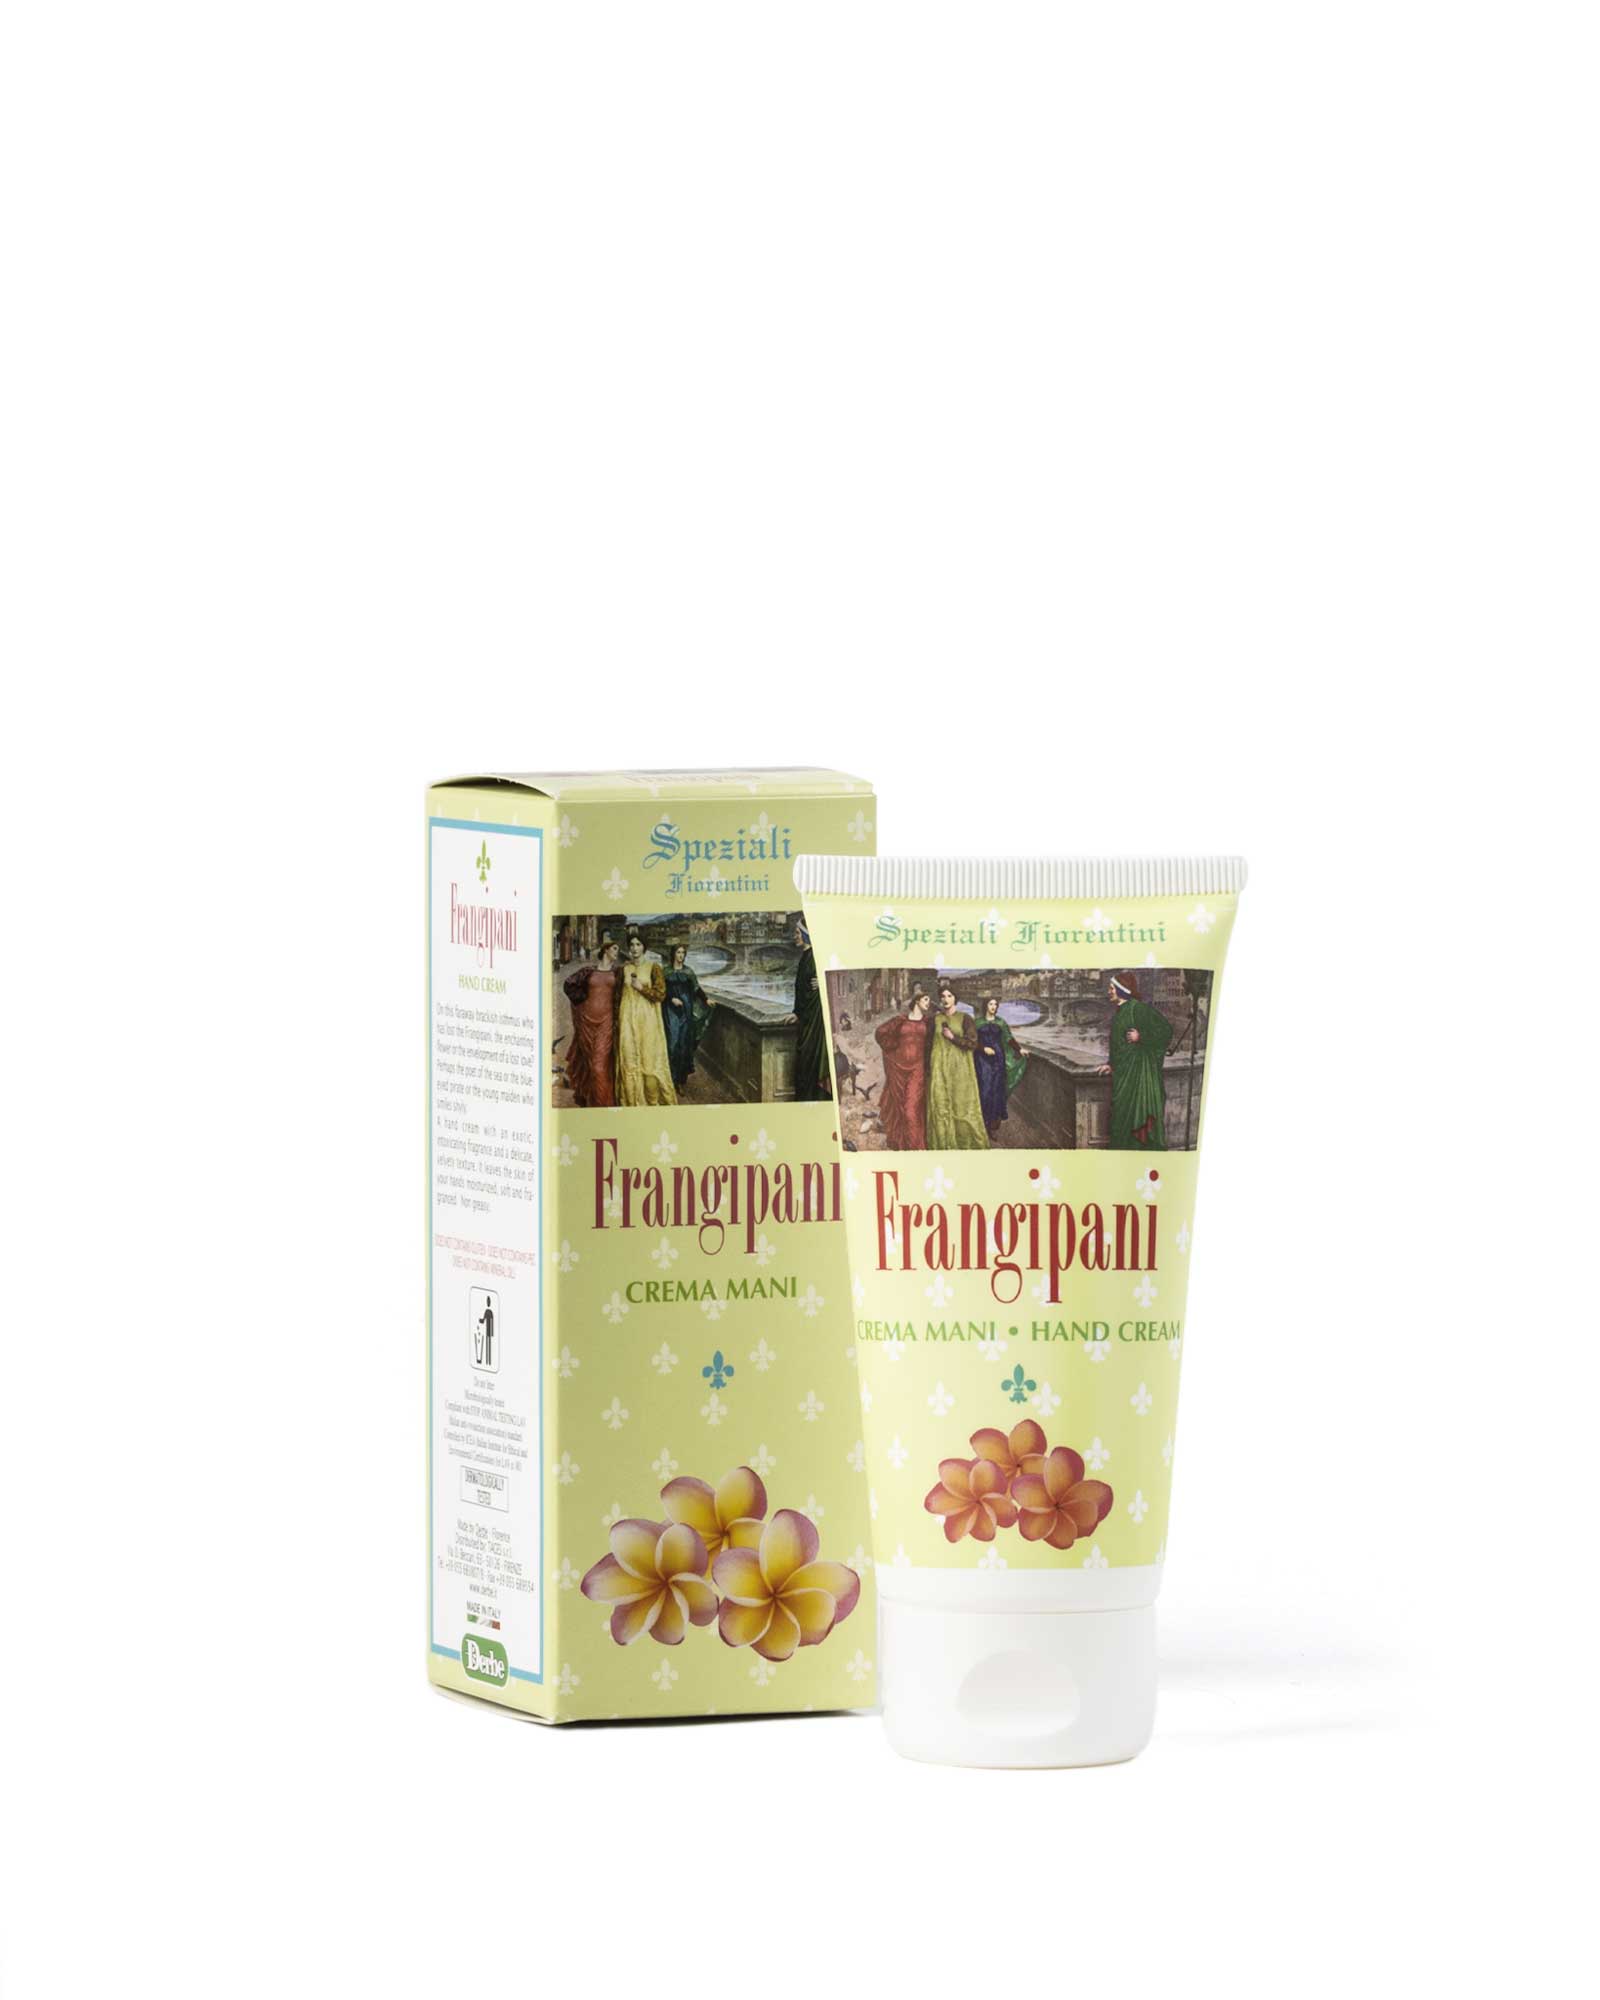 Crema mani frangipani – Speziali Fiorentini – Derbe